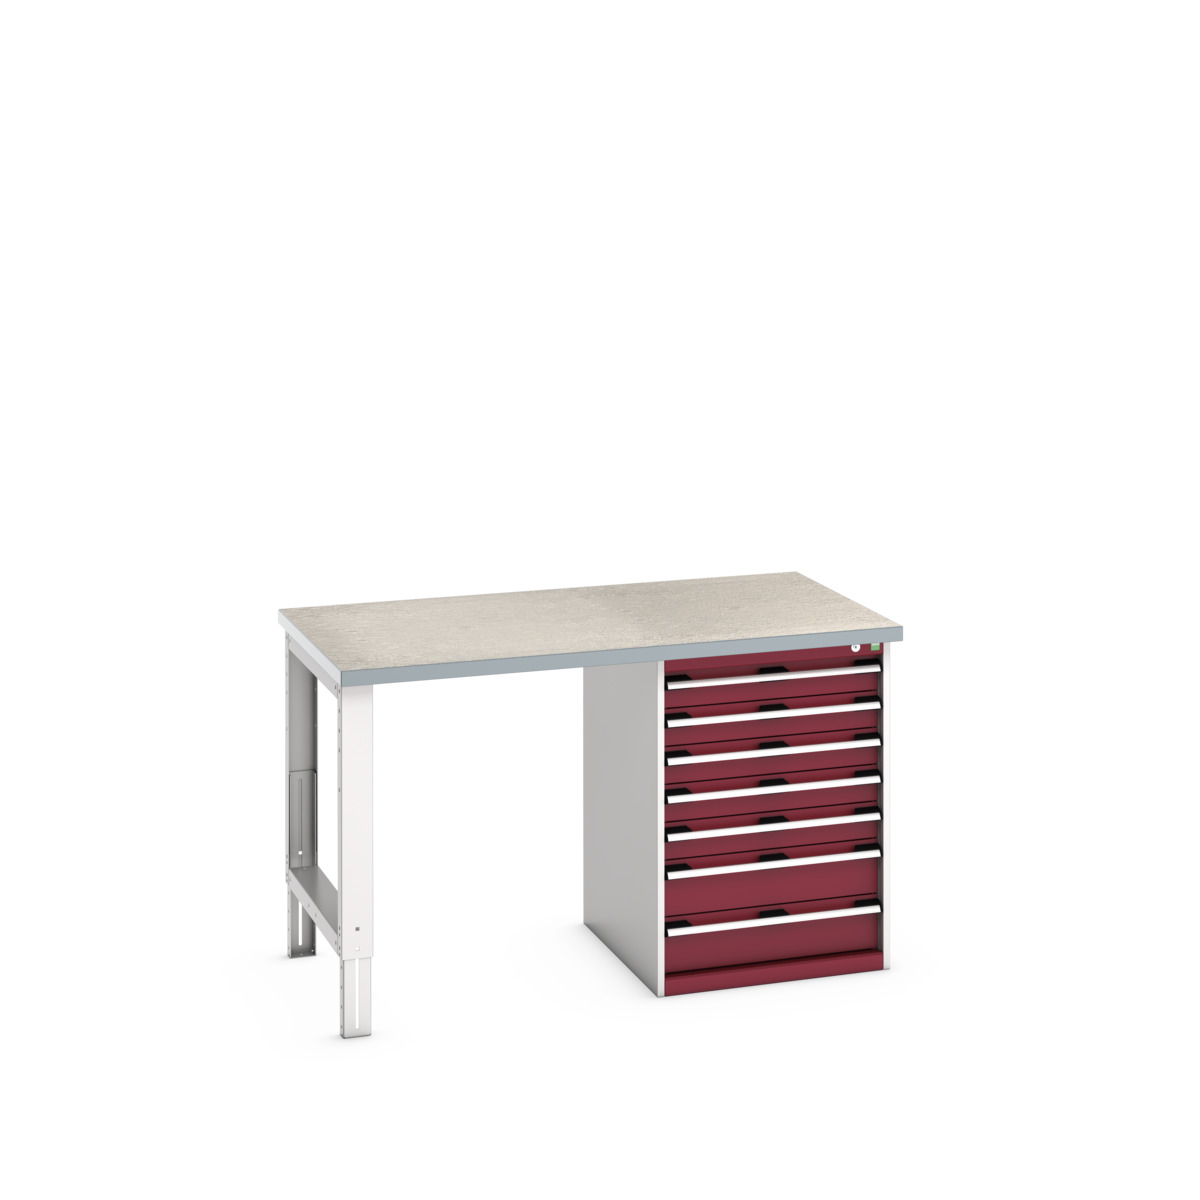 41003499.24V - cubio pedestal bench (lino)